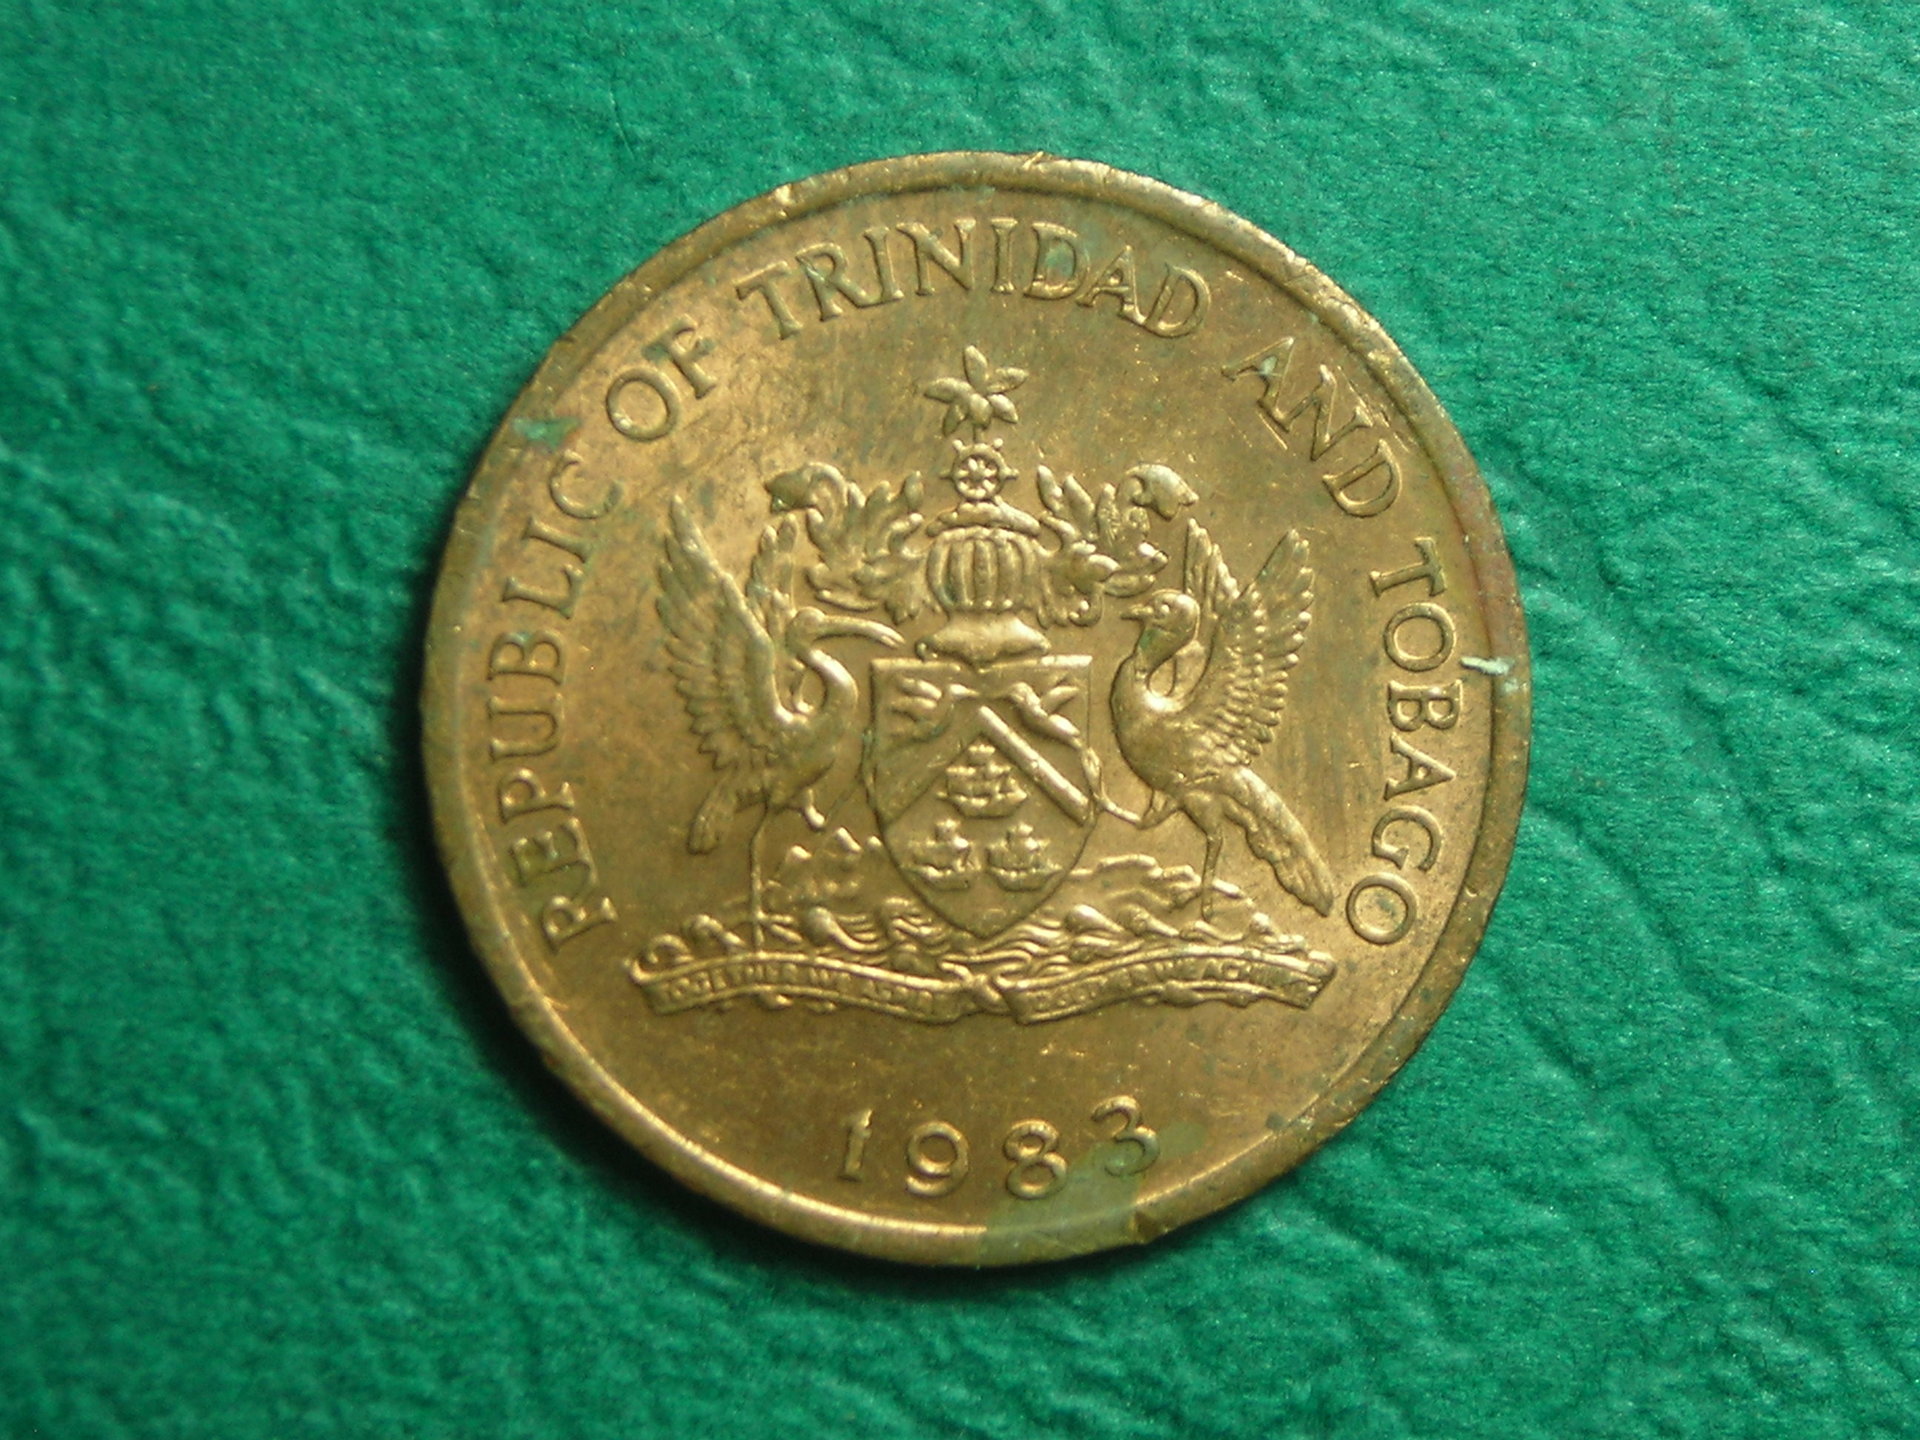 1983 Trinidad 1 cent rev.JPG